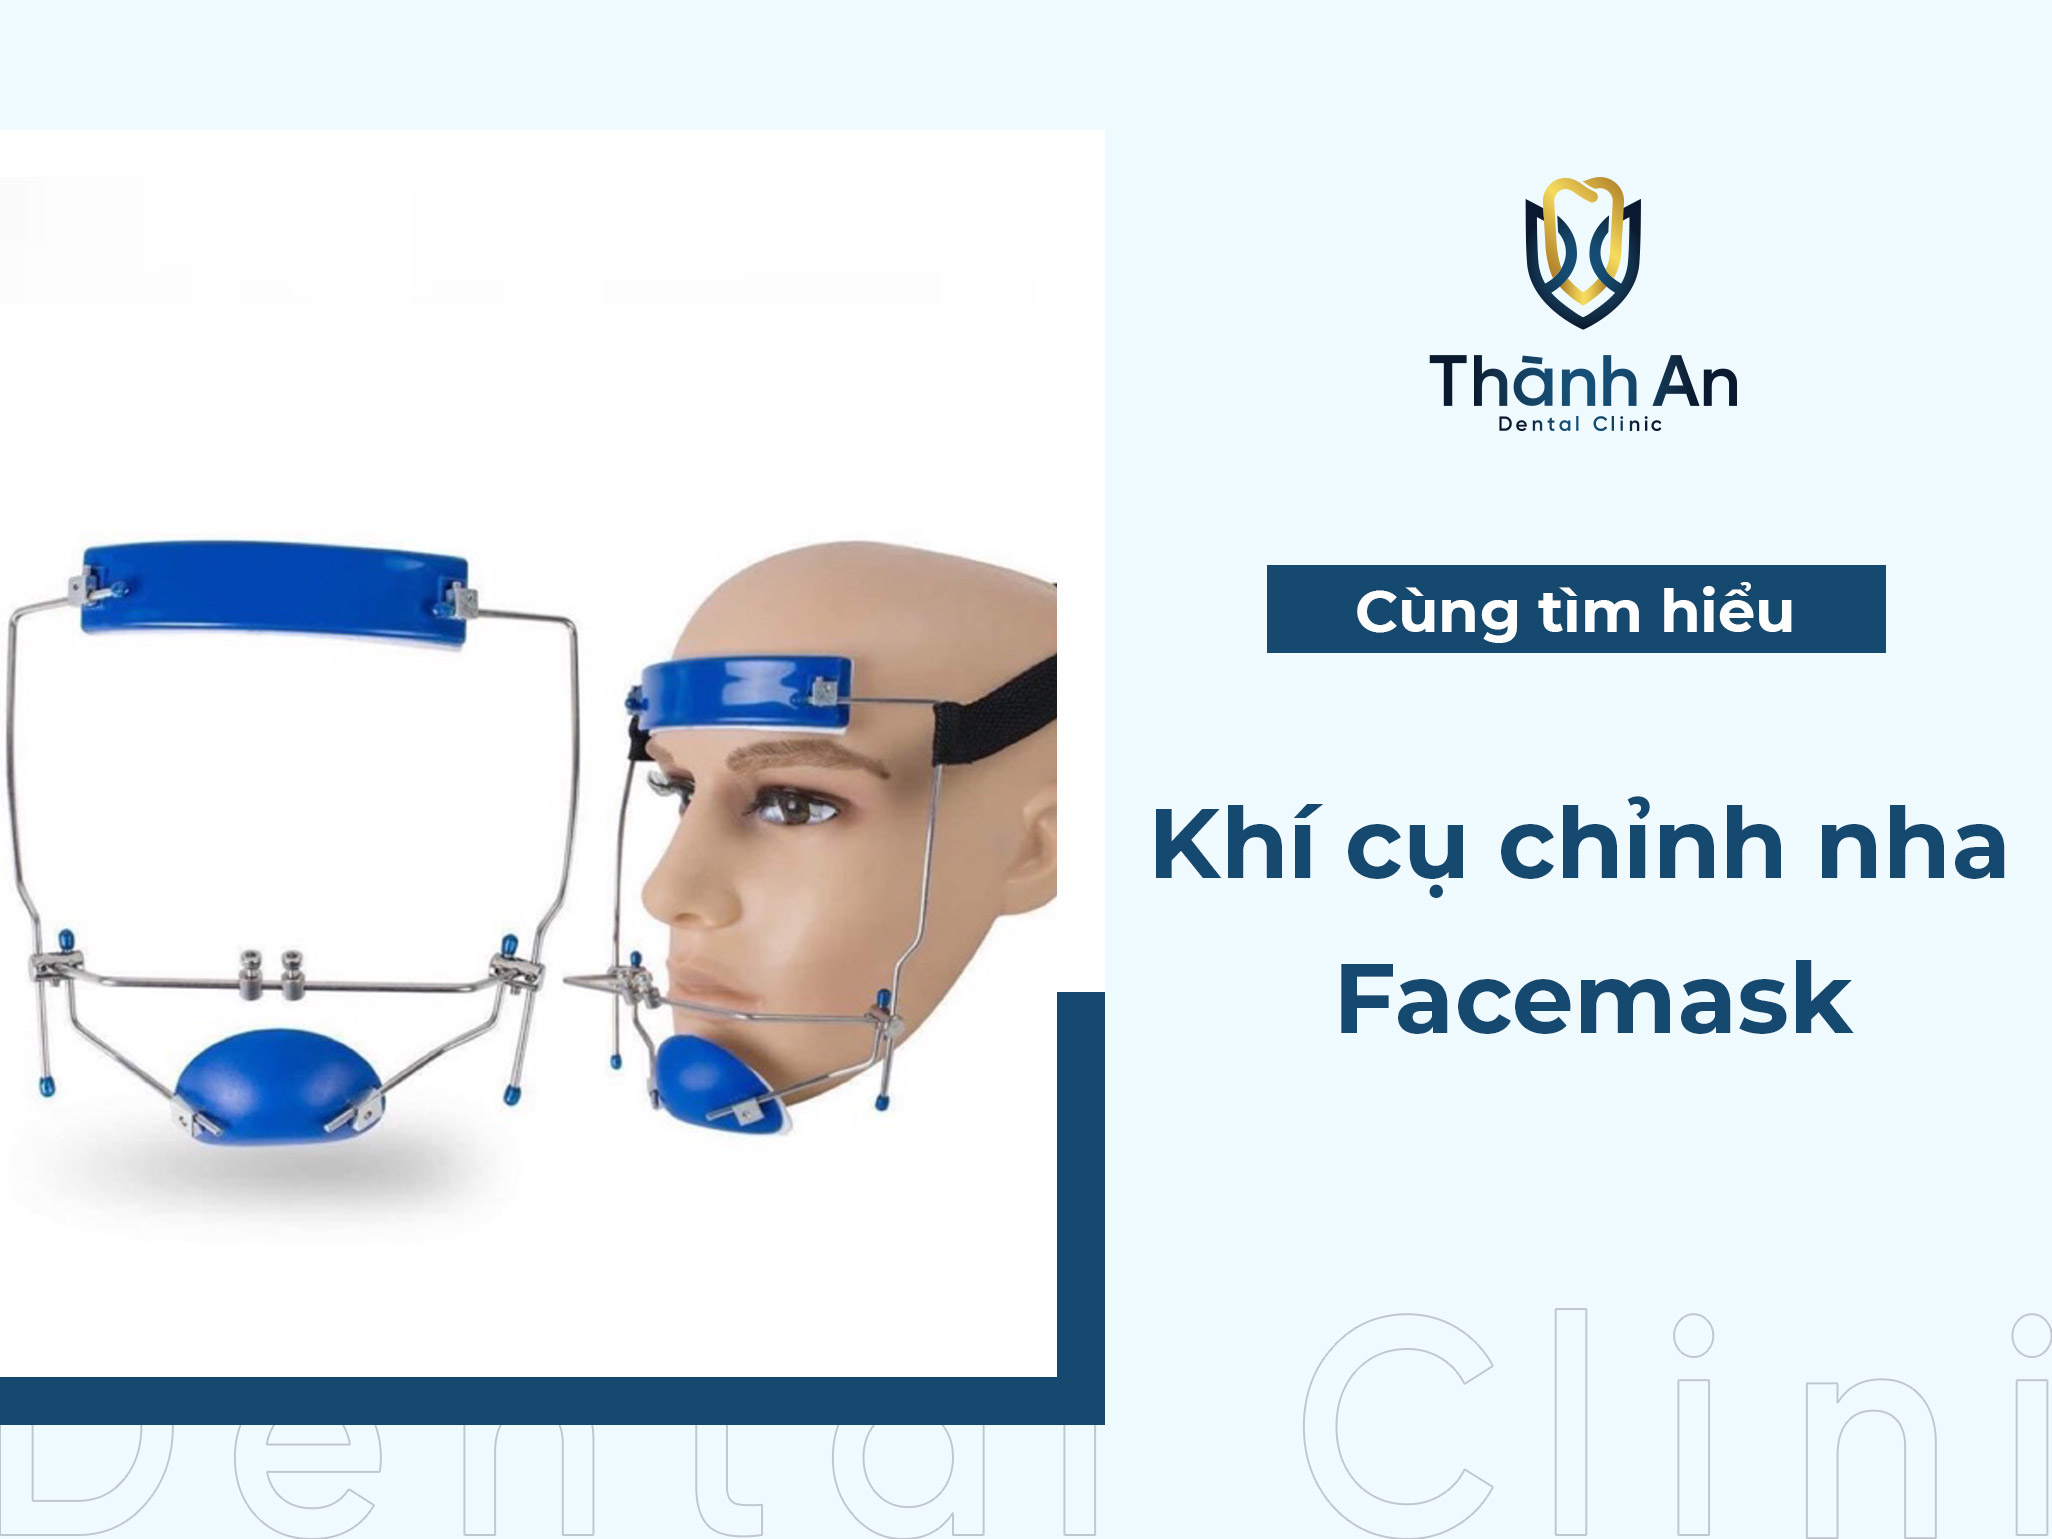 Khí cụ chỉnh nha Facemask - “Vũ khí” điều chỉnh khớp cắn ngược